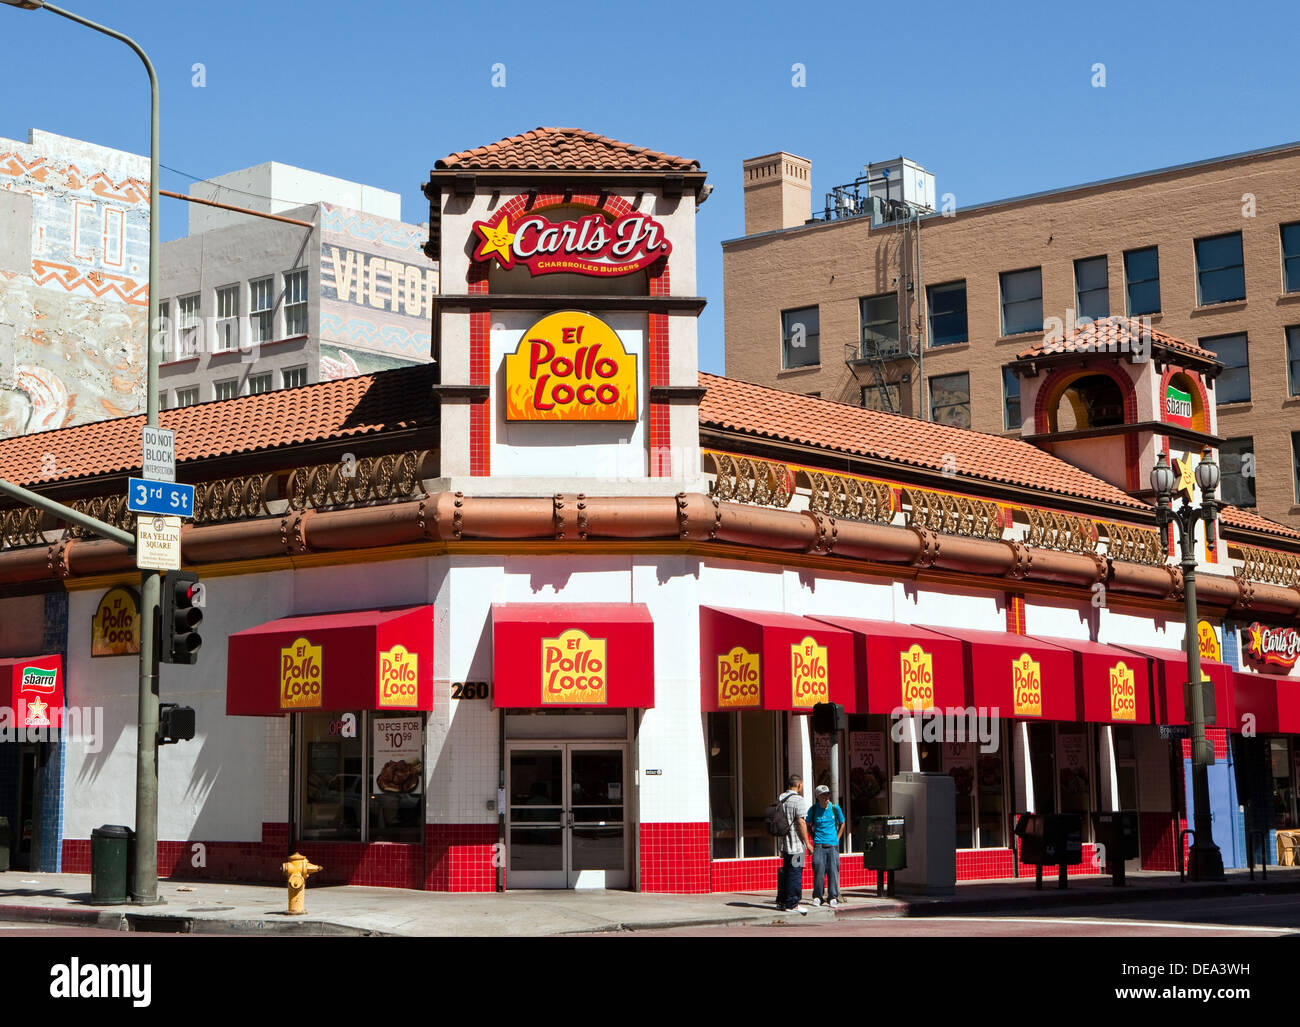 Vue d'un fast food comme Carl's Jr et El Pollo Loco dans le centre-ville de Los Angeles, Californie Banque D'Images